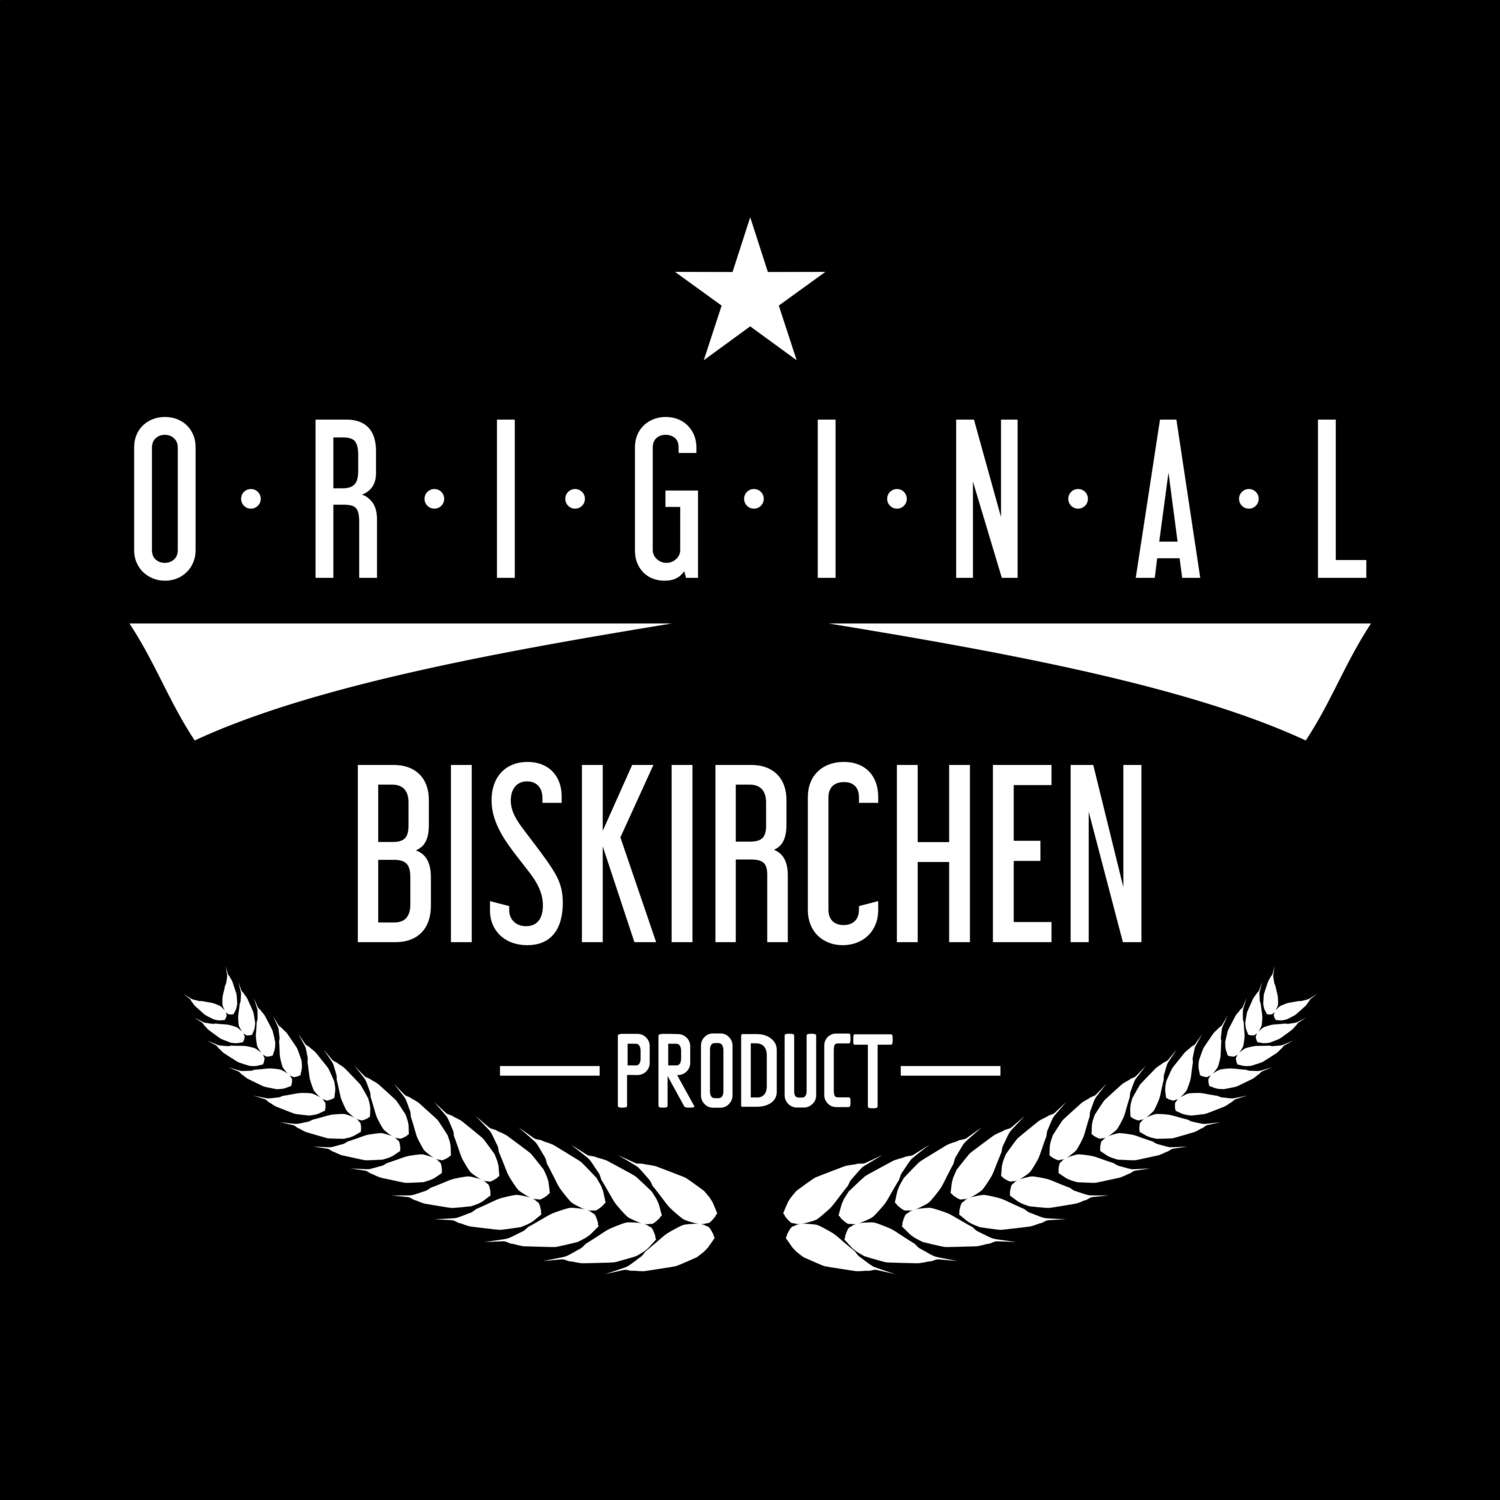 Biskirchen T-Shirt »Original Product«